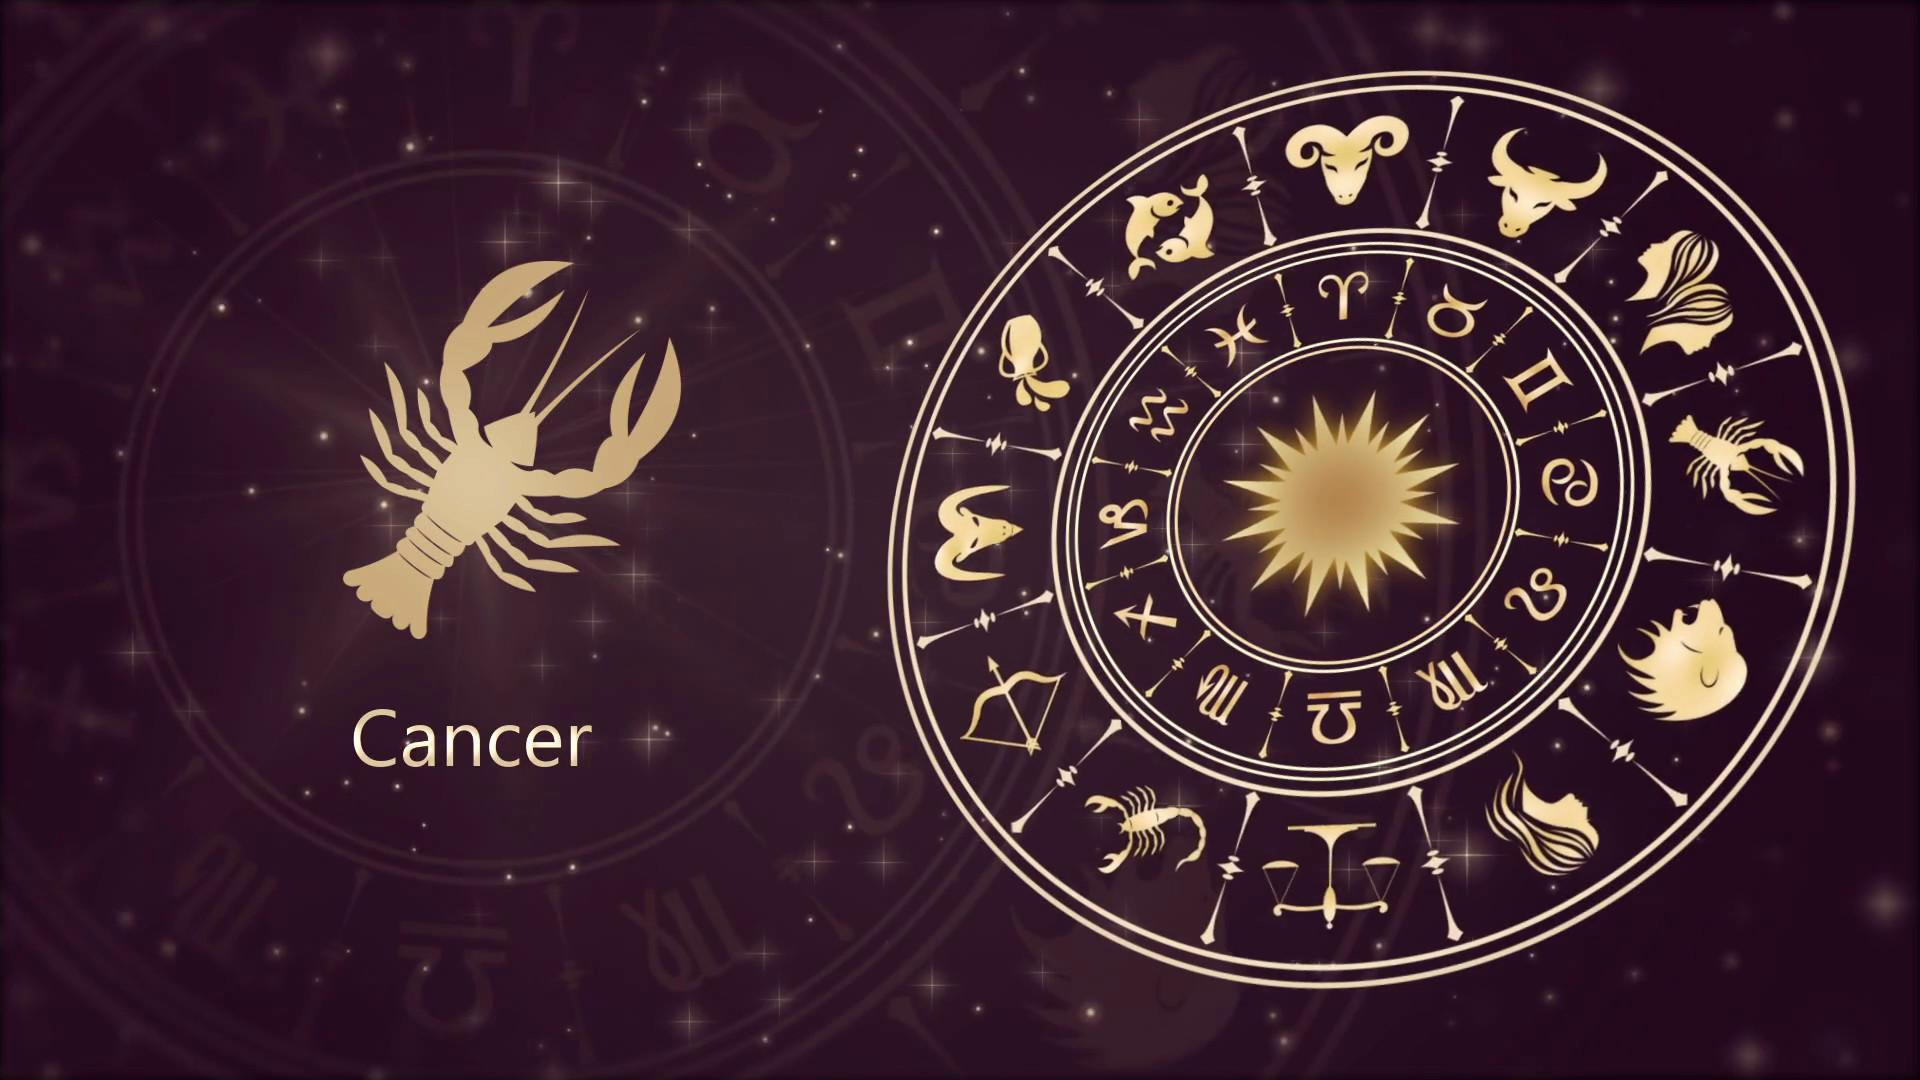 Zodiac Cancer wallpaper.net